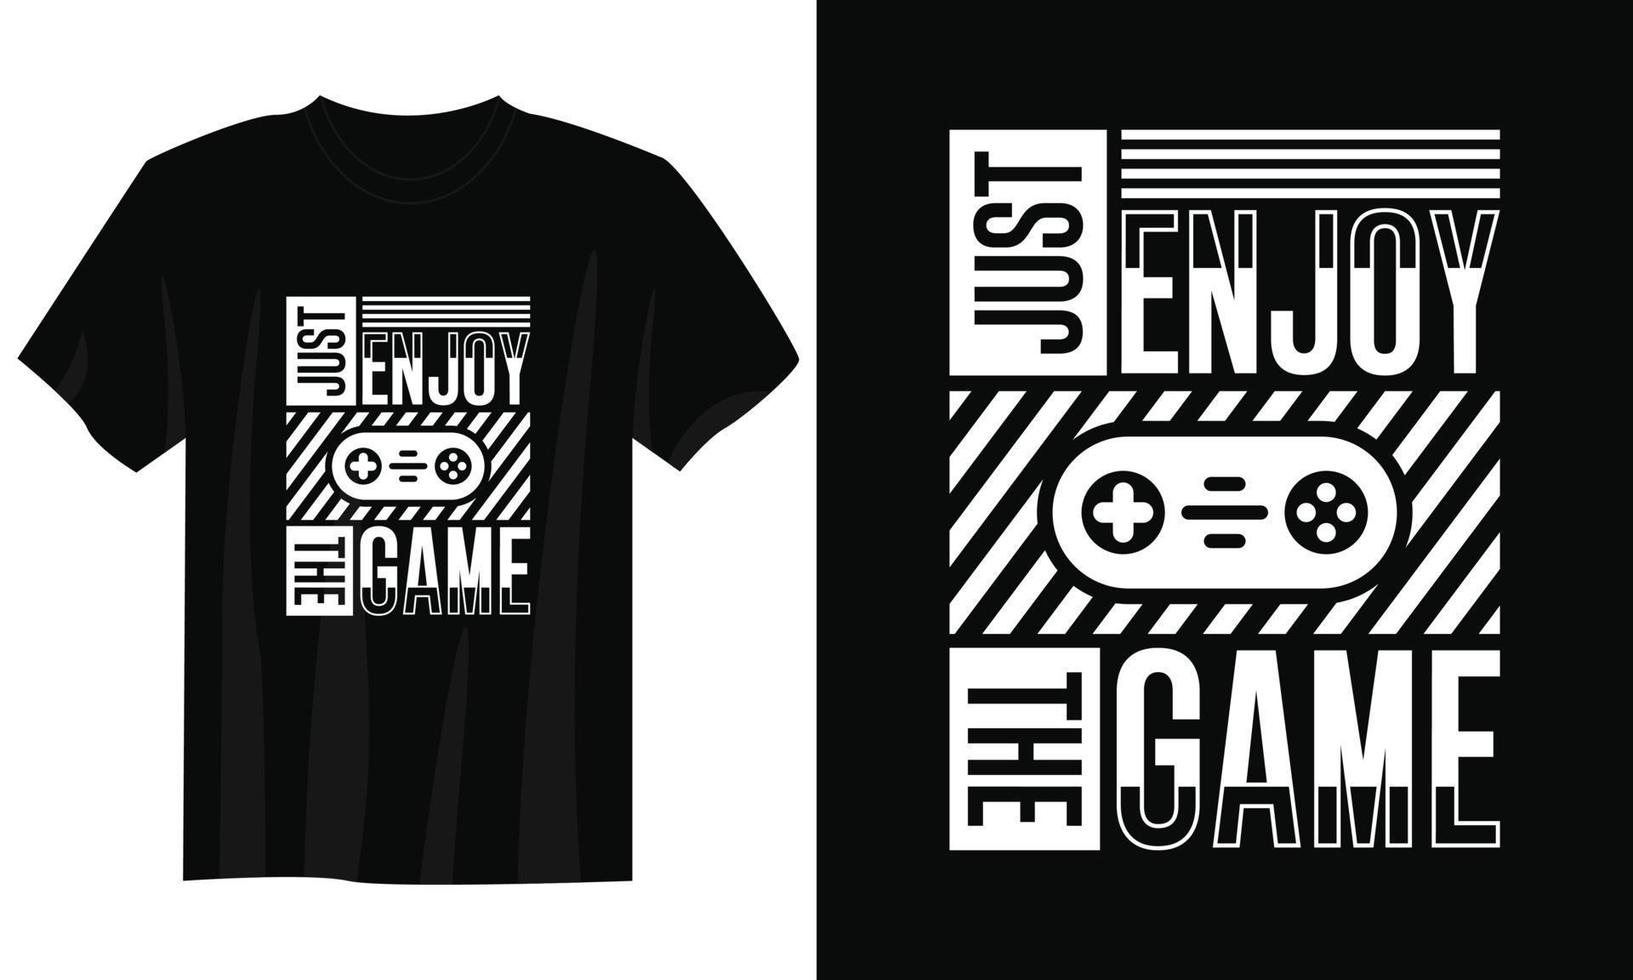 alleen maar genieten de spel gaming t-shirt ontwerp, gaming gamer t-shirt ontwerp, wijnoogst gaming t-shirt ontwerp, typografie gaming t-shirt ontwerp, retro gaming gamer t-shirt ontwerp vector